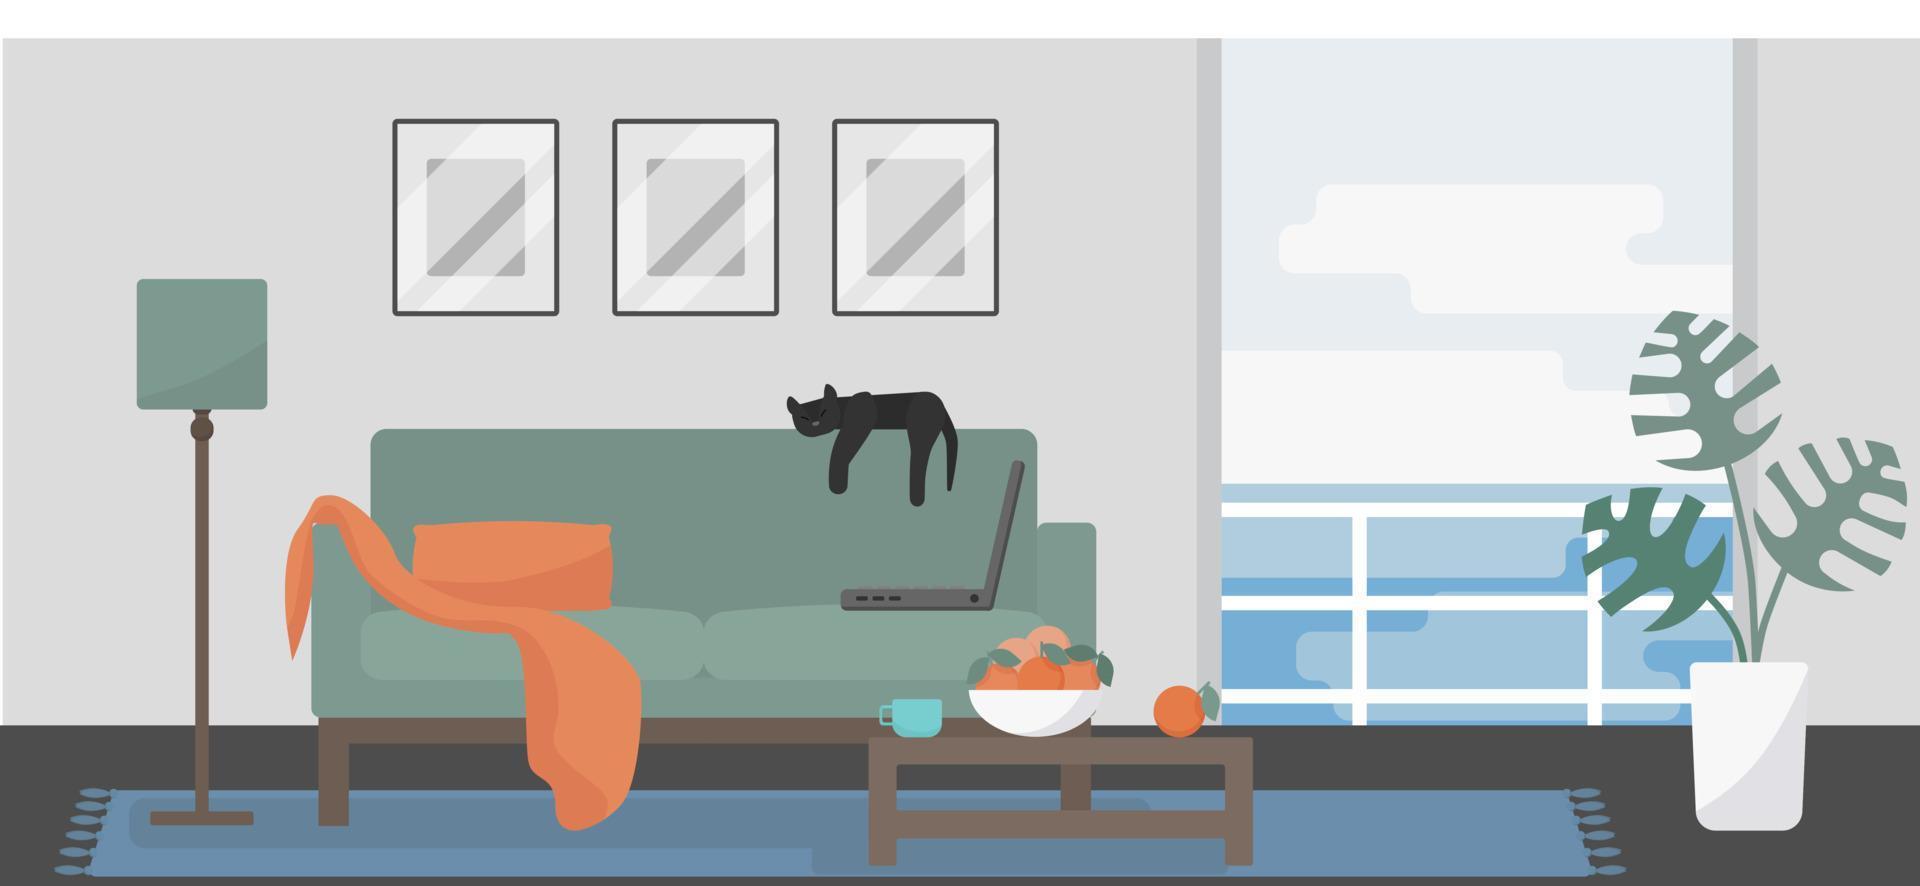 minimalistische kamer interieur met uitzicht op zee. groene bank met oranje plaid, laptop, dromende kat, salontafel met sinaasappels en een balkon. werk en ontspan balans concept. vlakke stijl vectorillustratie. vector